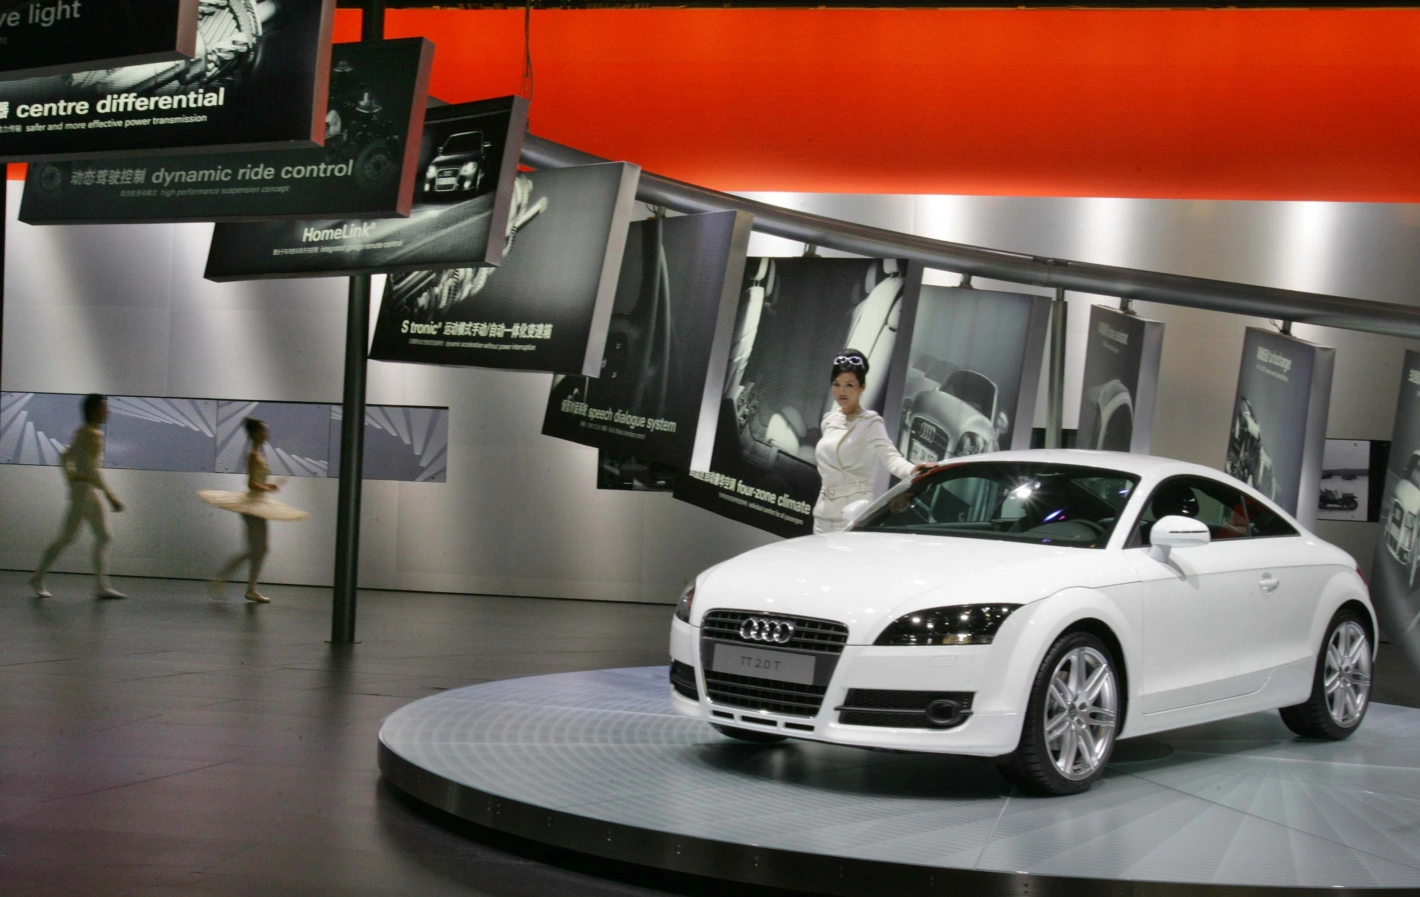 Traditionelle deutsche Autohersteller wie Audi sehen sich auf dem wichtigen Absatzmarkt China einer selbstbewussten Startup-Konkurrenz ausgesetzt. Foto: Keystone